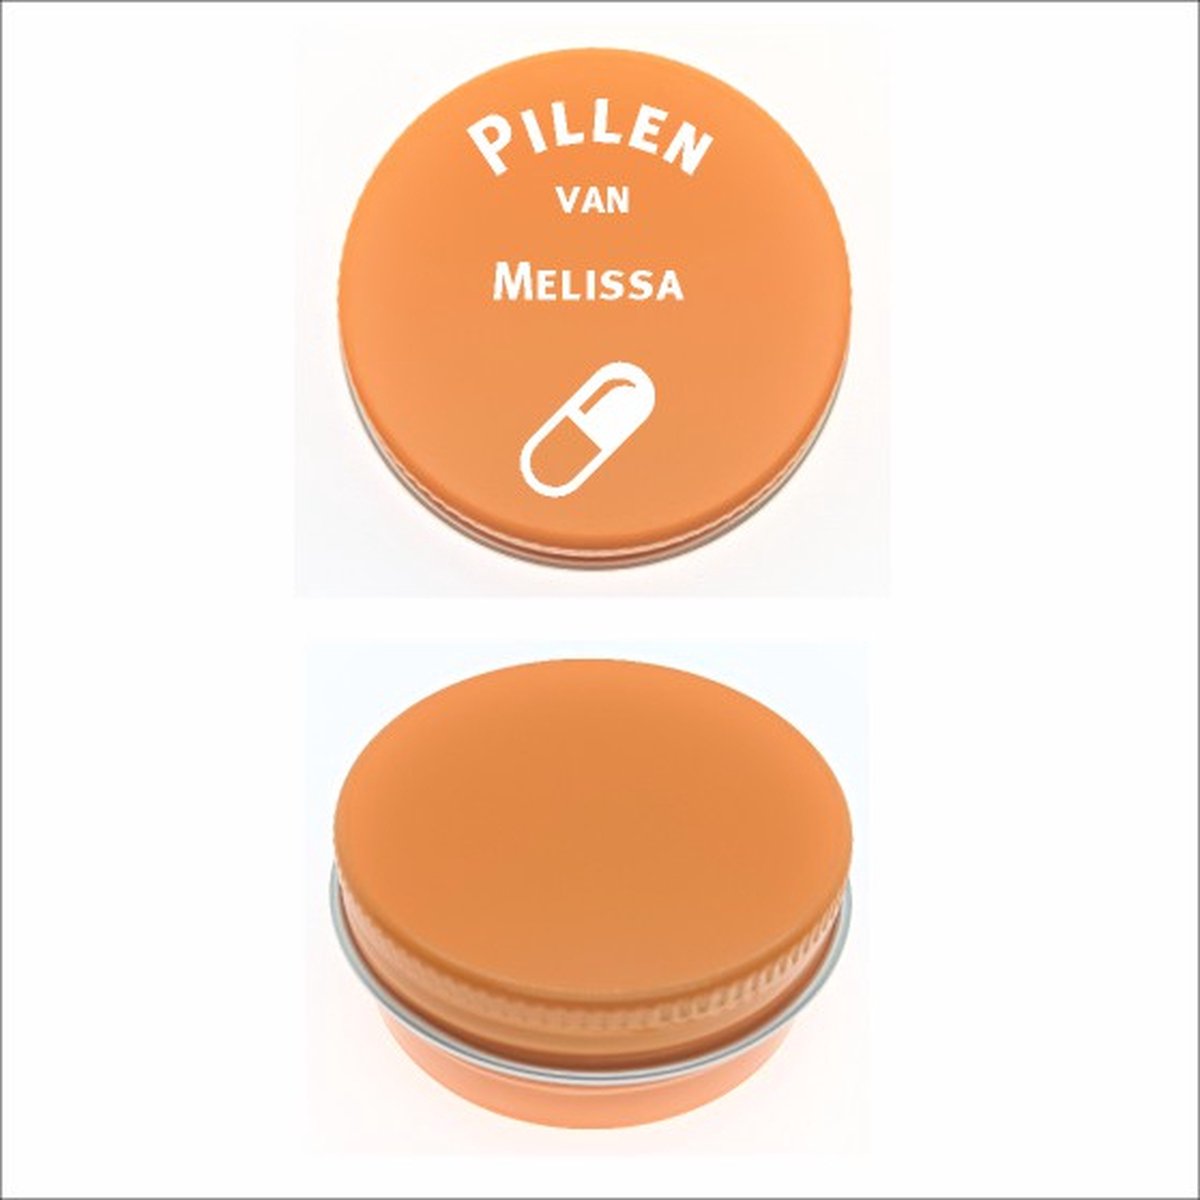 Pillen Blikje Met Naam Gravering - Melissa